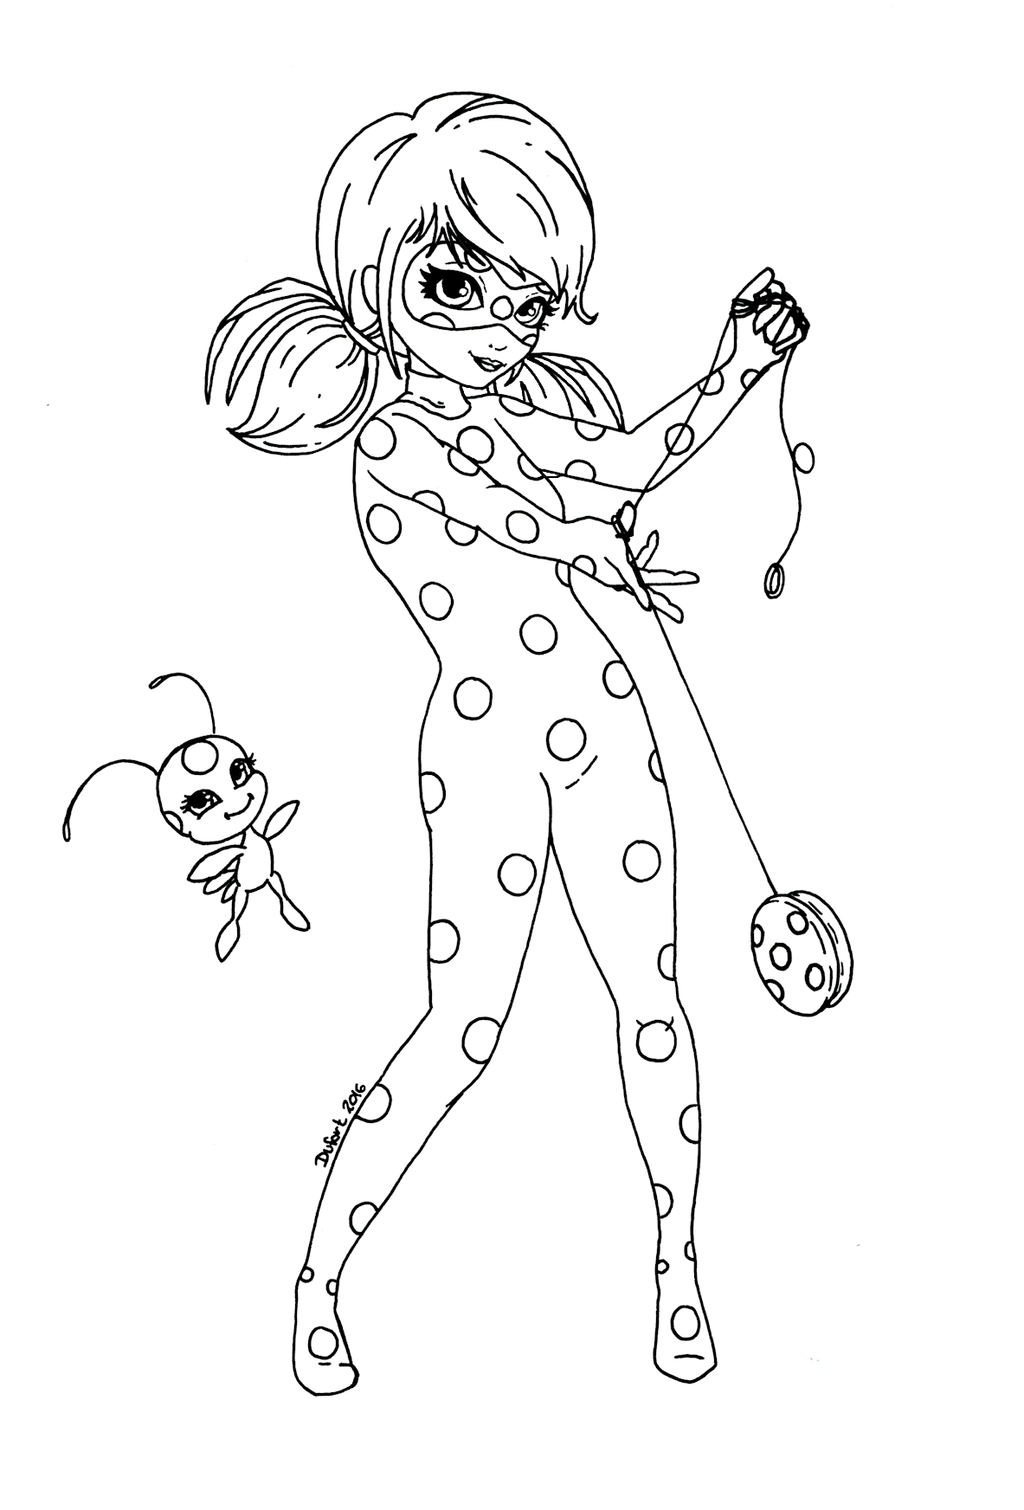 رسومات للتلوين لشخصيات كرتون ladybug ,لمحبات المسلسل الكرتوني ladybug رسومات للتلوين